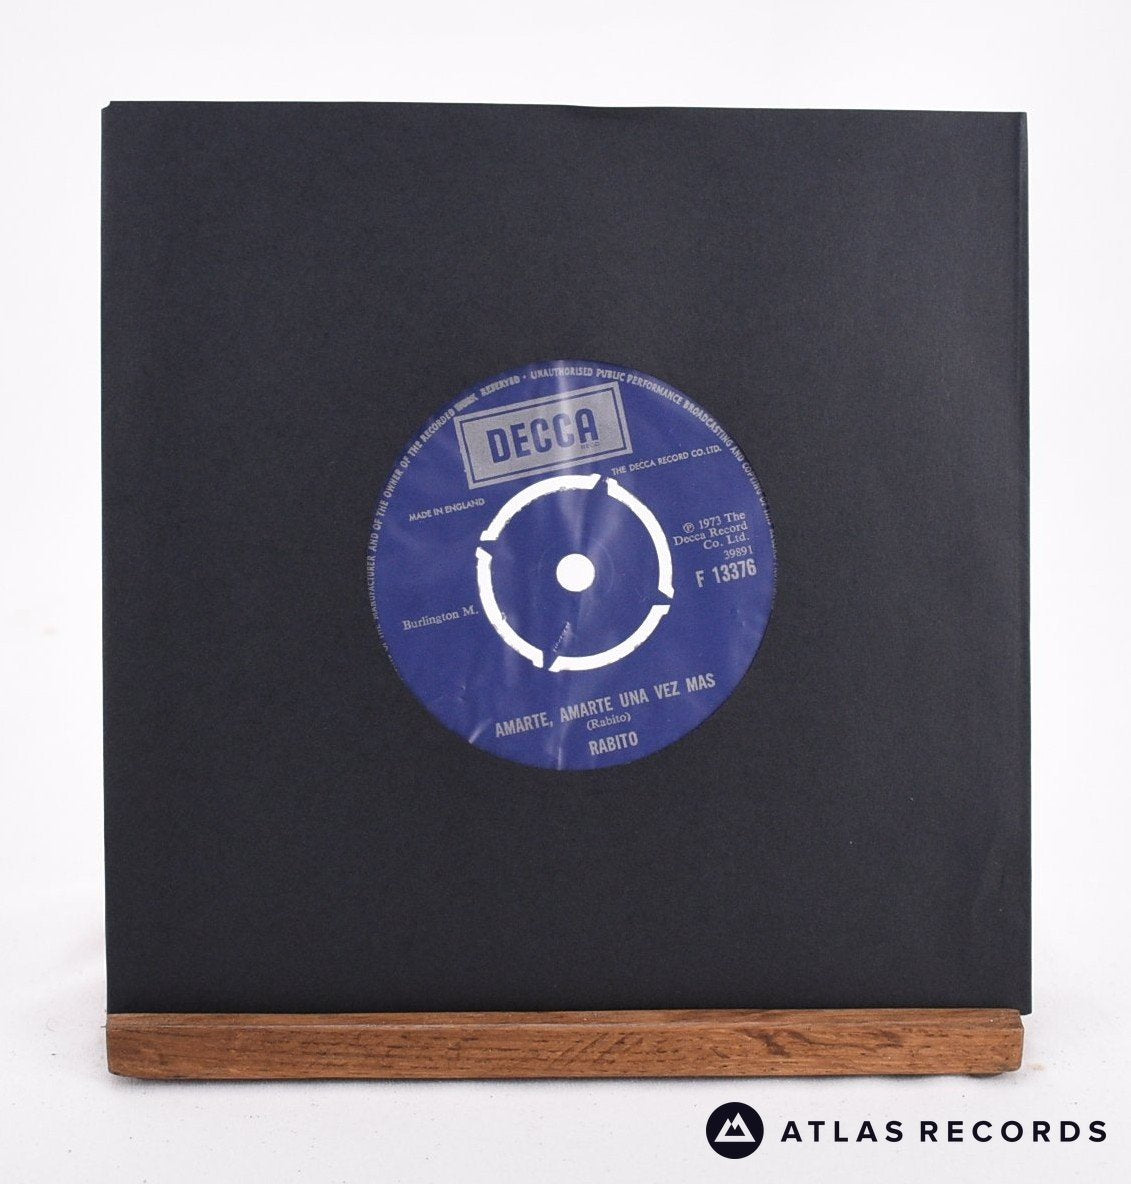 Rabito Amarte, Amarte Una Vez Mas / Cual Es Tu Hombre 7" Vinyl Record - In Sleeve